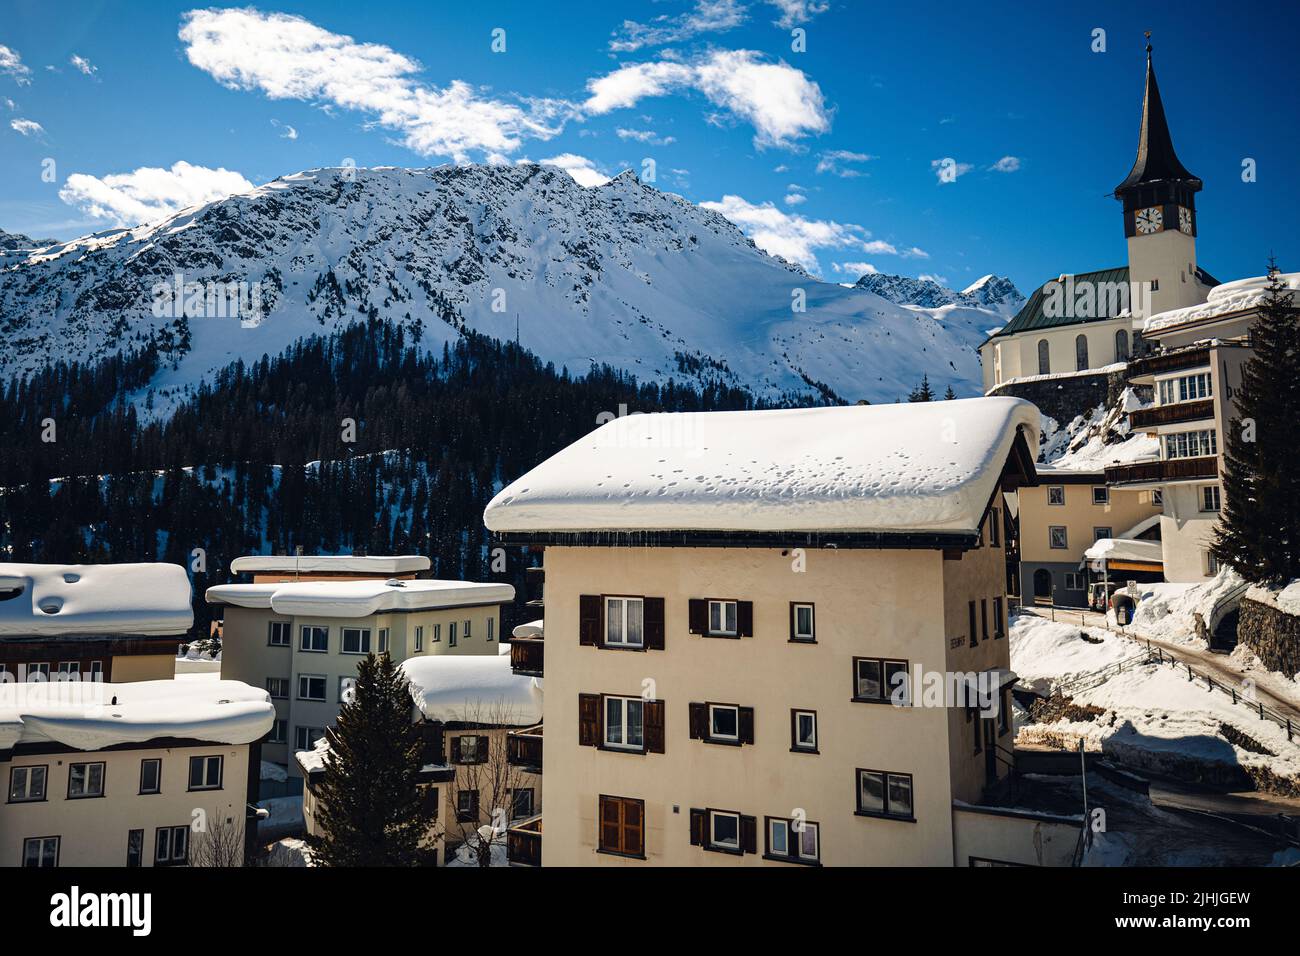 Hiver enneigé à Arosa, Suisse Banque D'Images